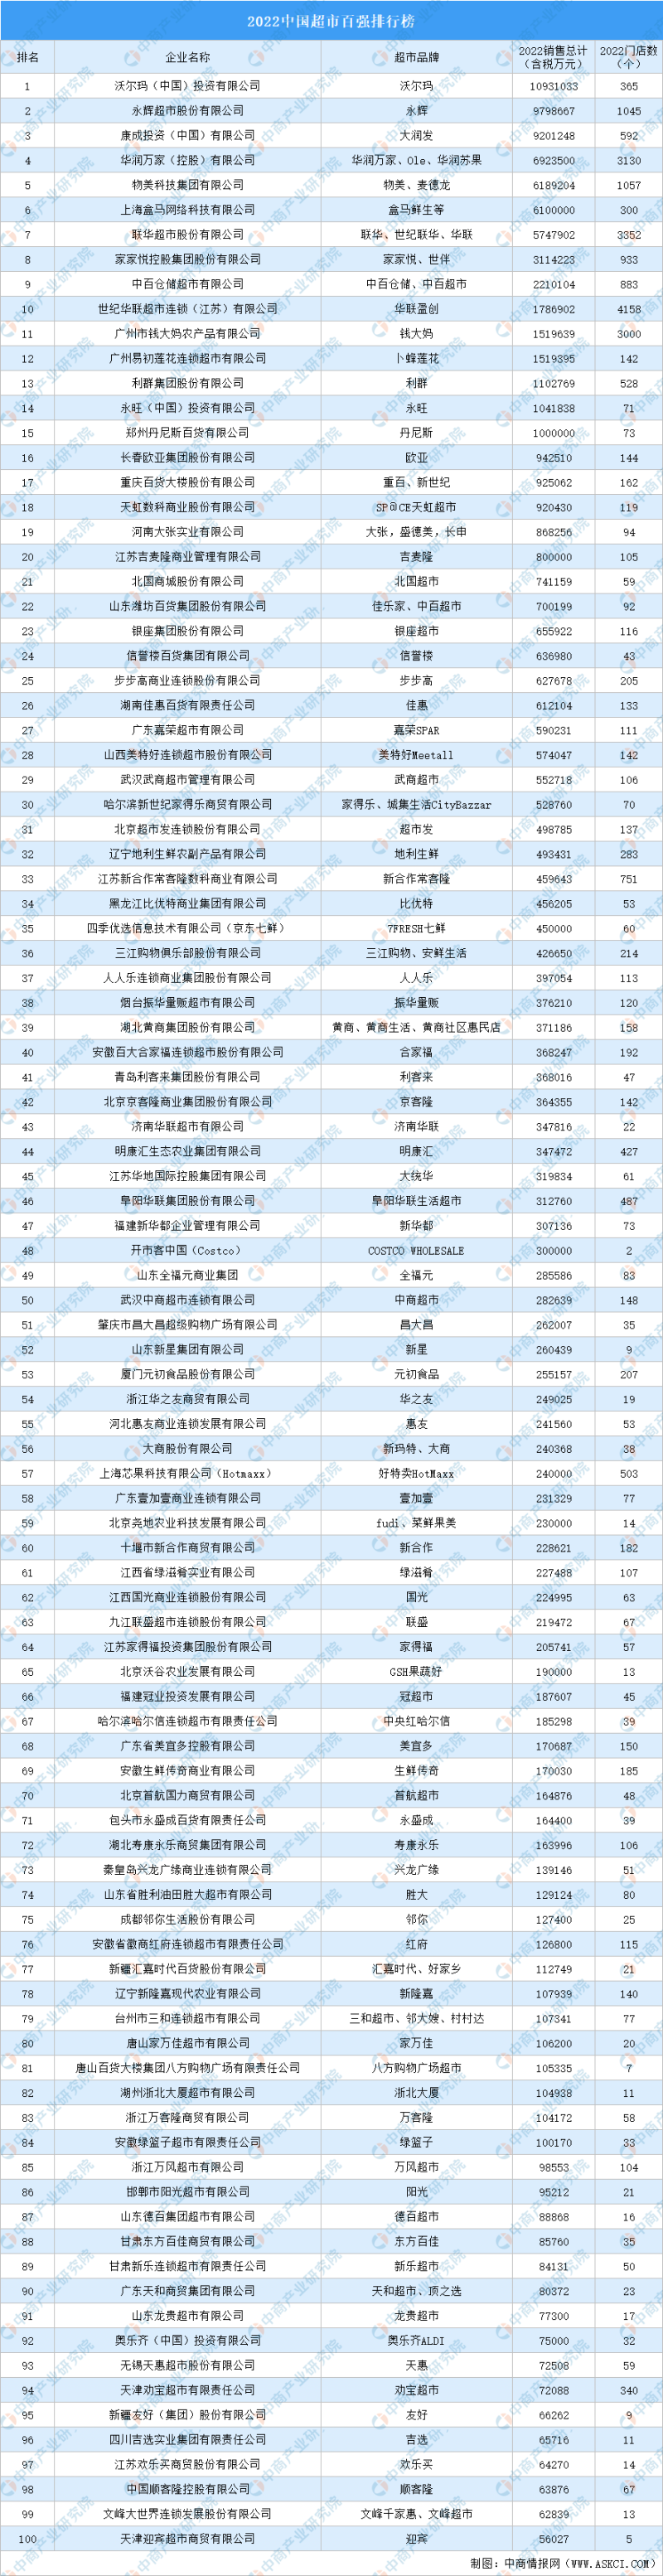 中国超市百强排行榜